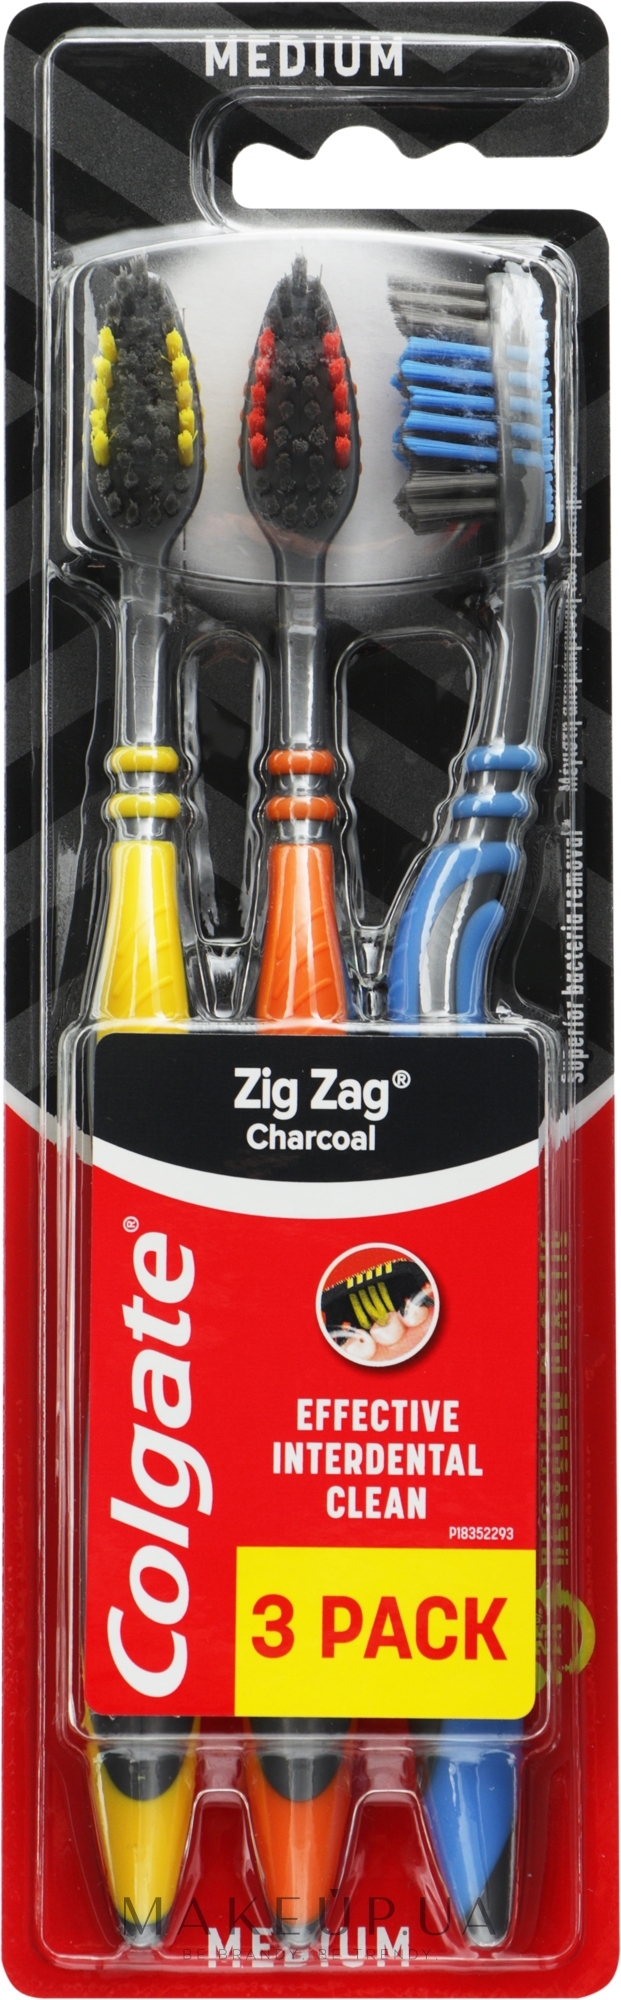 Зубная щетка "ЗигЗаг" перекрестные щетинки, 2+1 средней жесткости, желтая+оранжевая+синяя - Colgate Zig Zag — фото 3шт